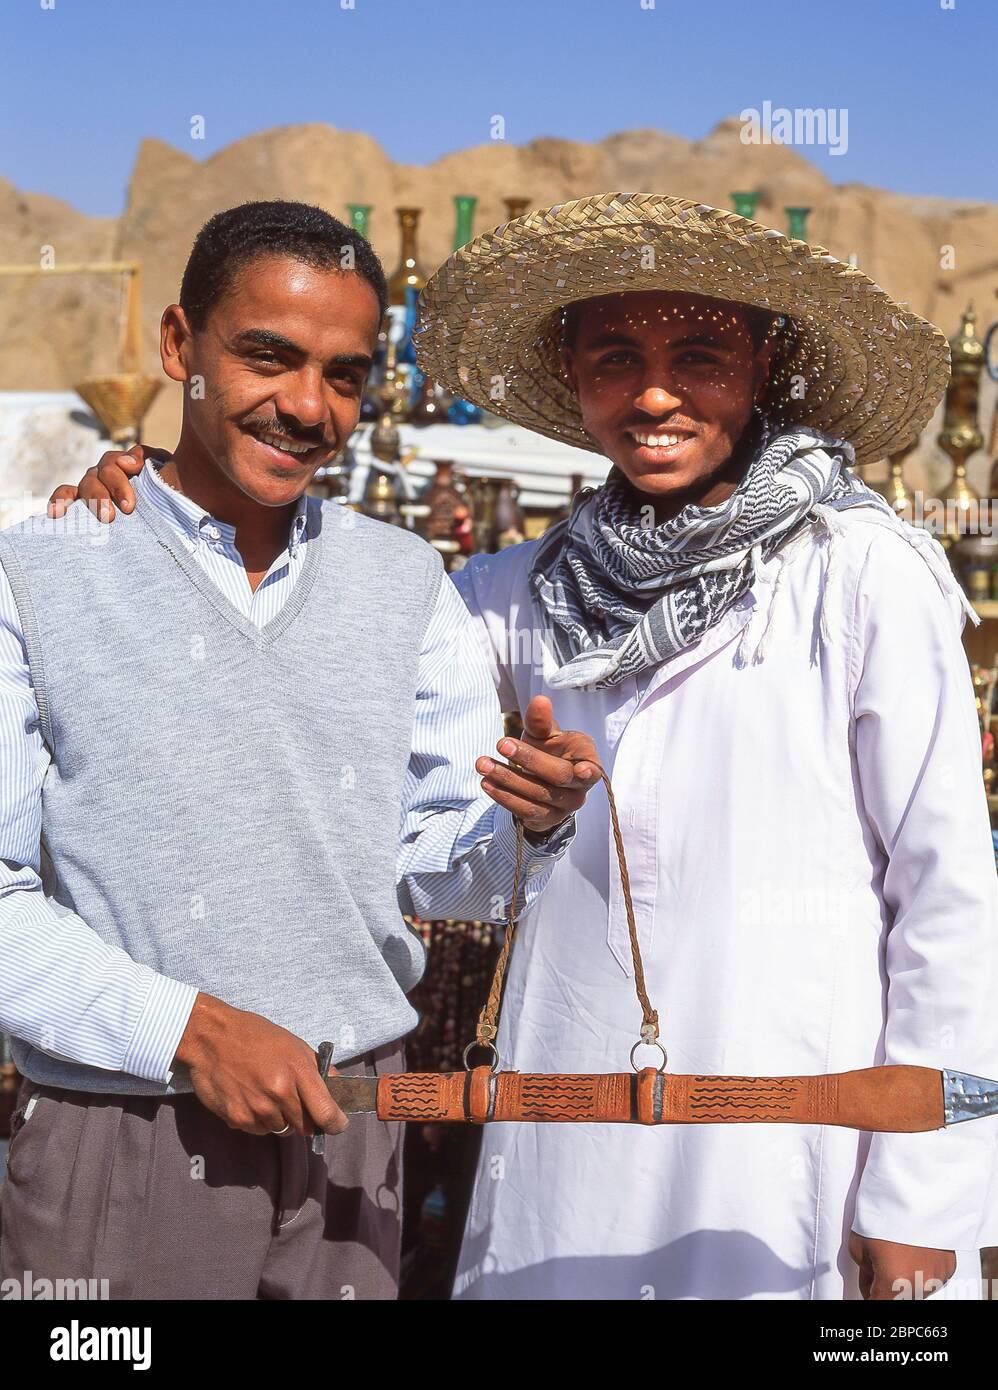 Les détenteurs de stalle locale tenant une épée locale, Assouan, gouvernorat d'Assouan, République d'Égypte Banque D'Images